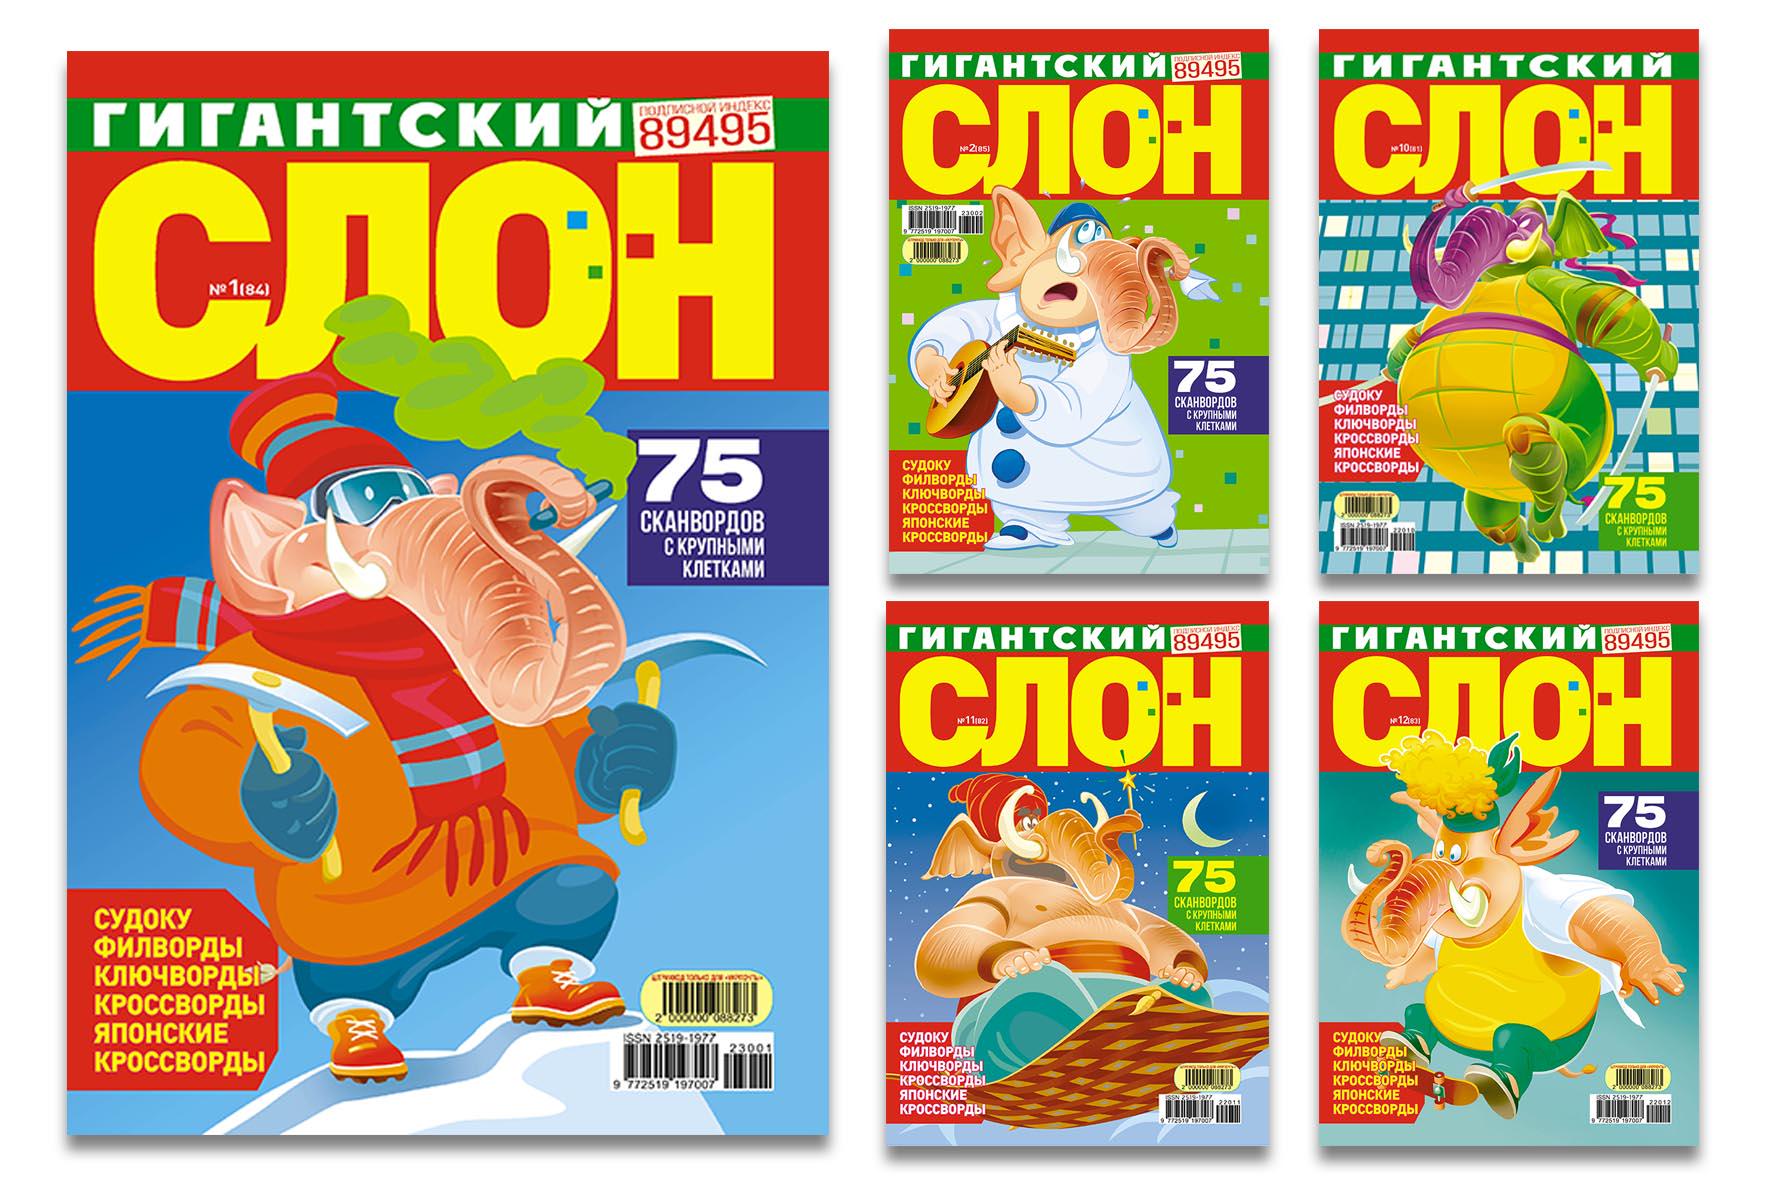 Журнали "Гигантский слон" комплект з 5 номерів (4820088571294)